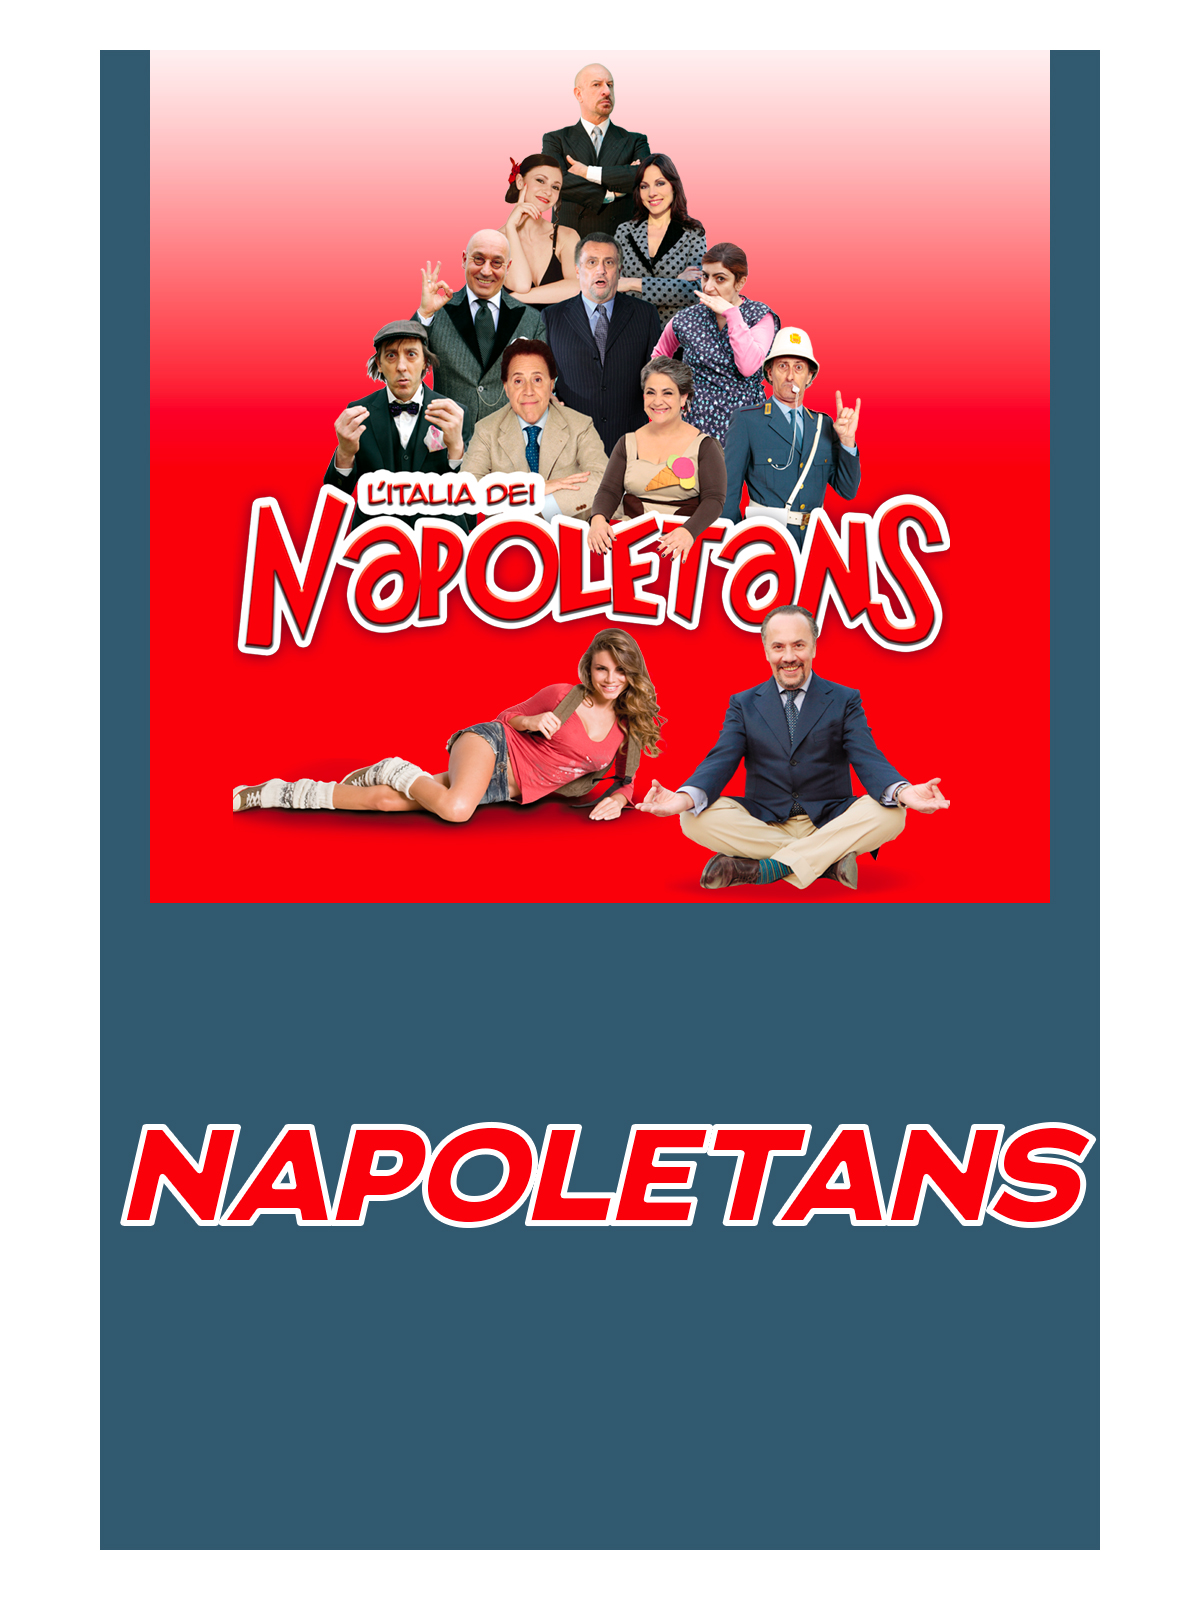 Napoletans